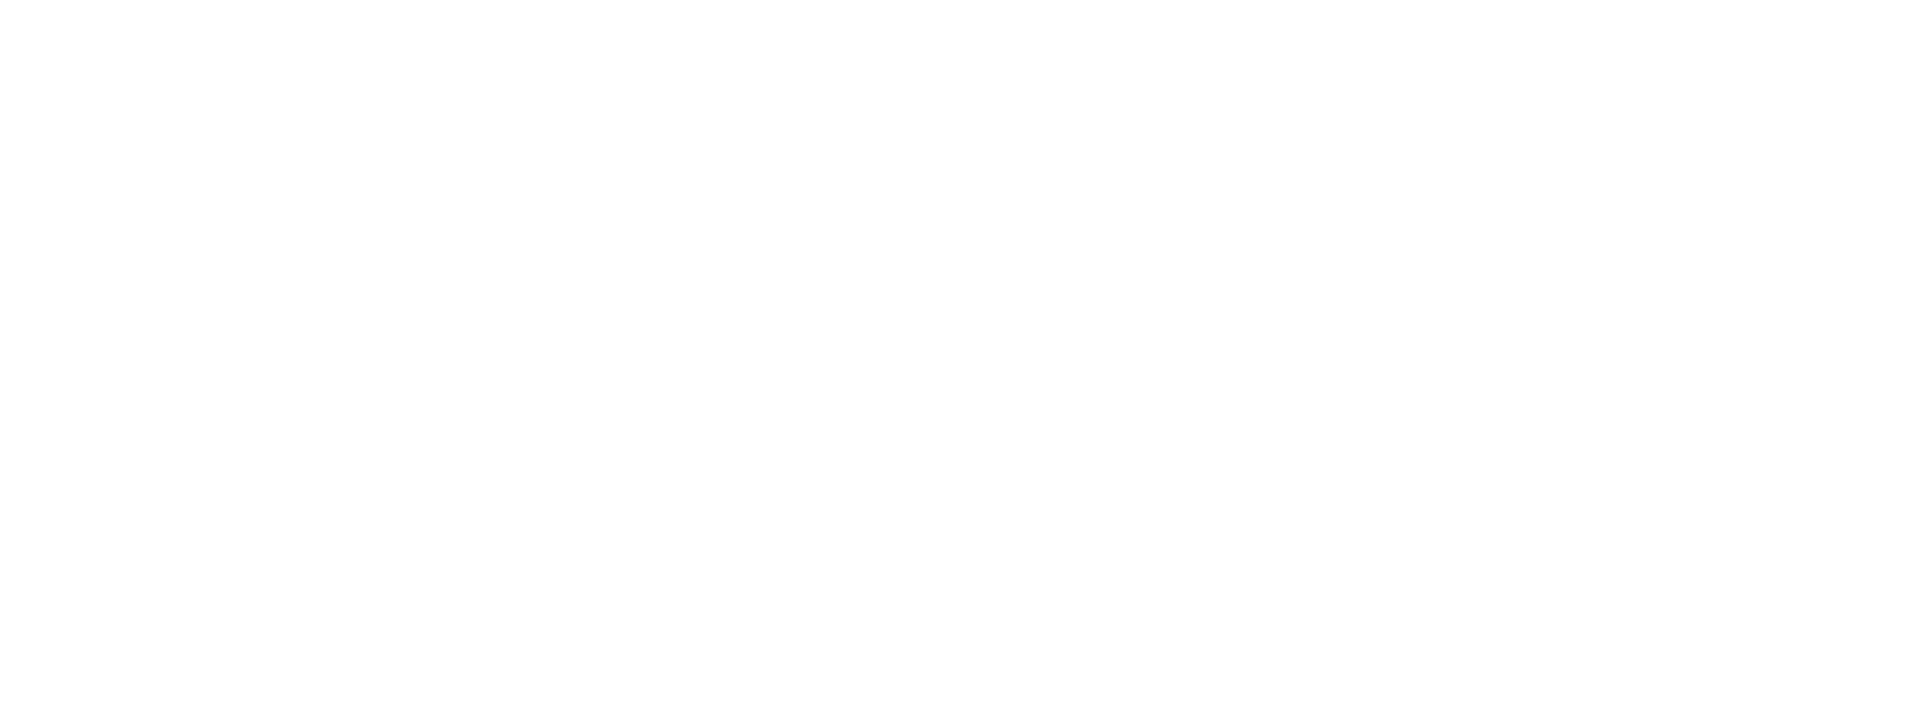 EV Certified